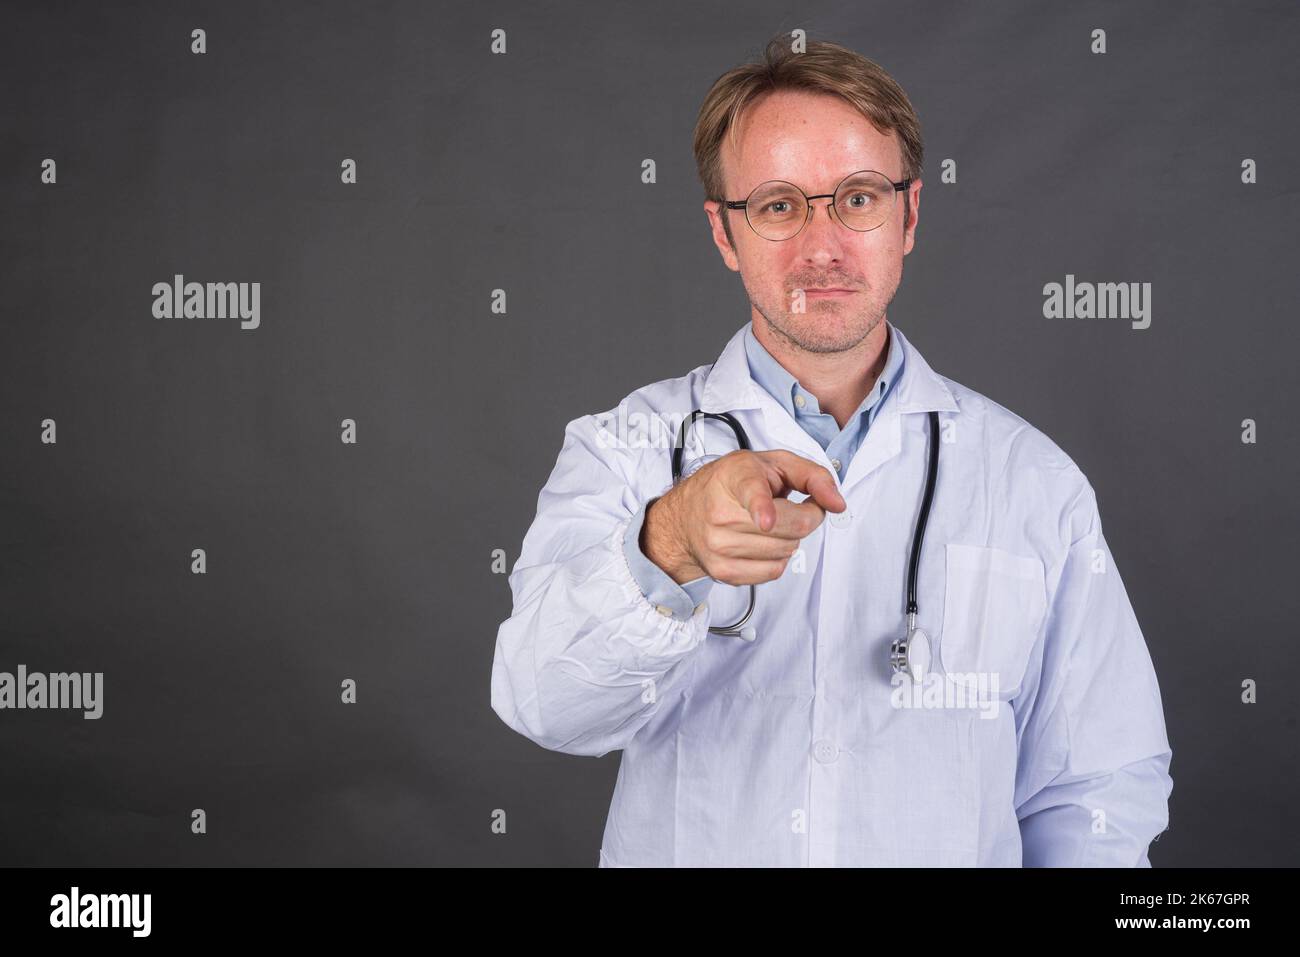 Homme heureux médecin avec stéthoscope sur le cou dans un pelage médical pointant le doigt sur fond gris Banque D'Images